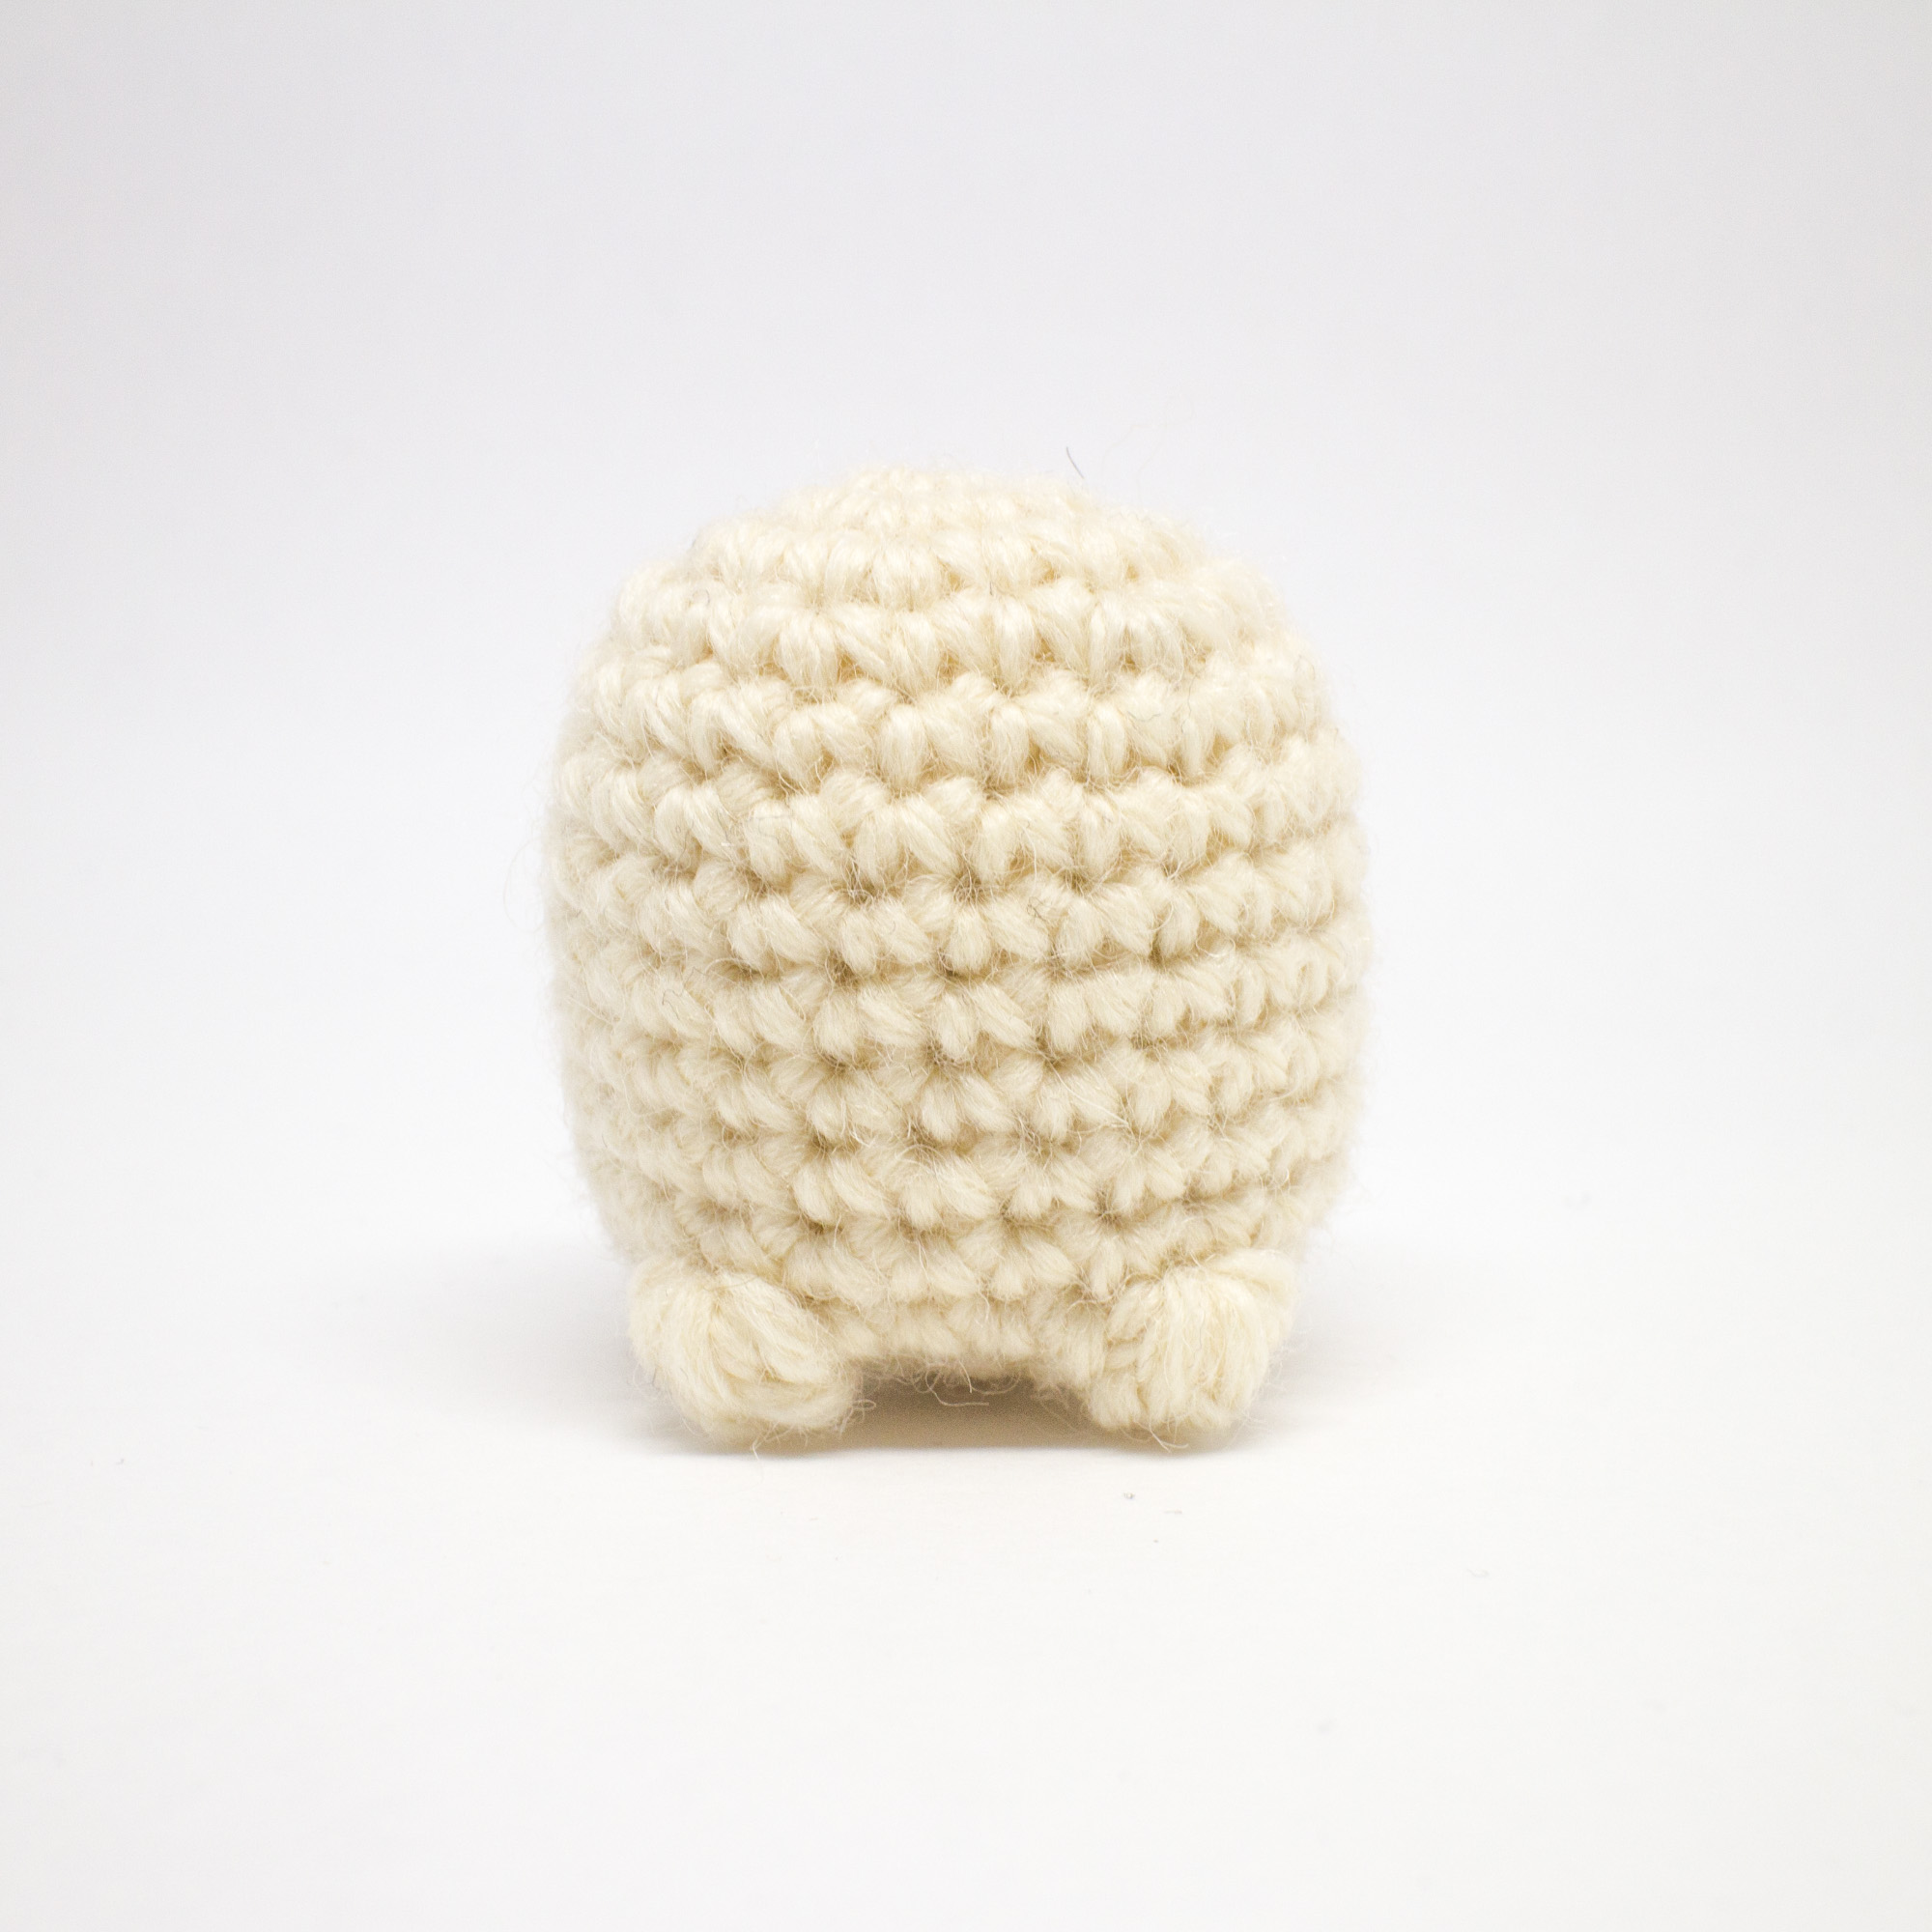 Mini Amigurumi Pug Crochet Pattern